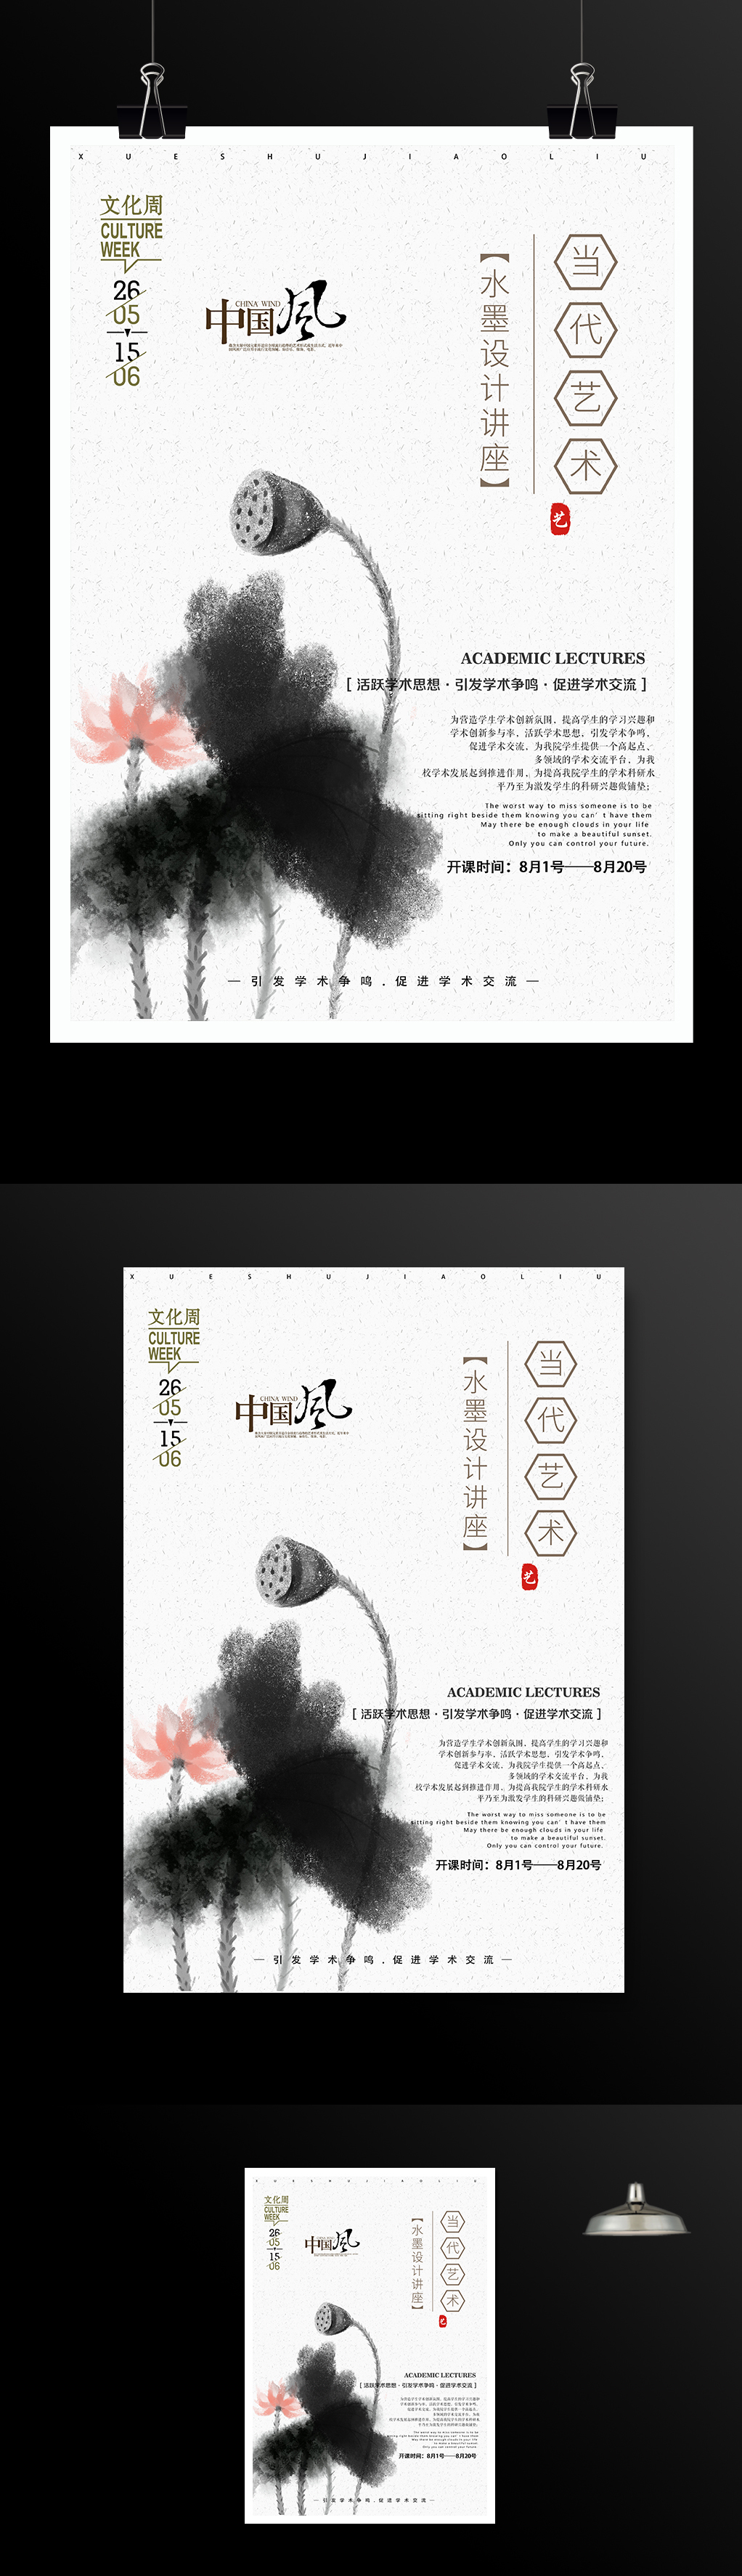 中国风水墨艺术文化交流名师讲座宣传海报